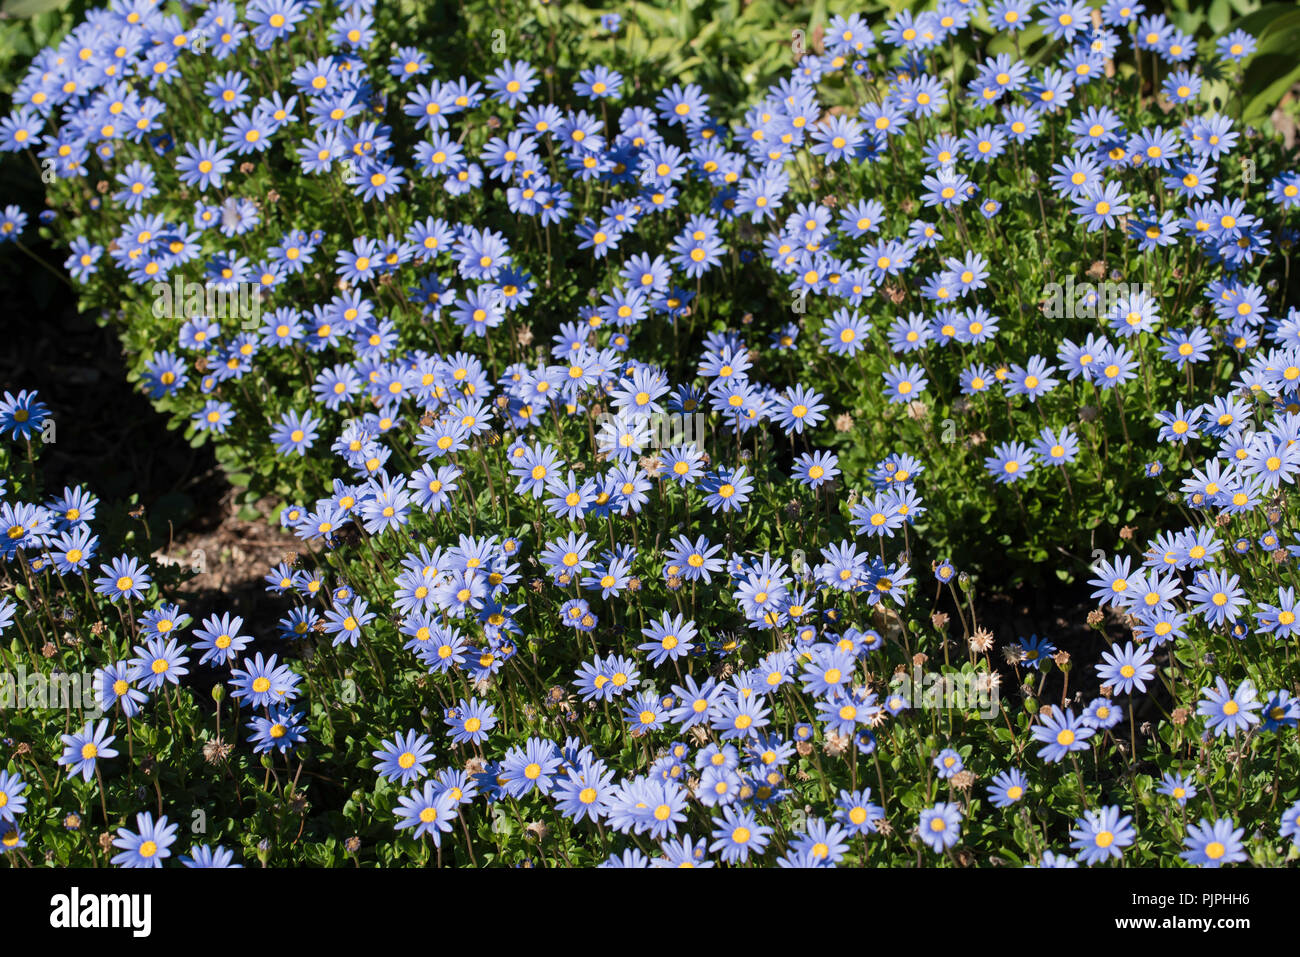 Originariamente dal Sudafrica questa vivace display blu di Marguerite margherite (Felicia amelloides) è fiorente in un letto giardino sotto il sole australiano. Foto Stock